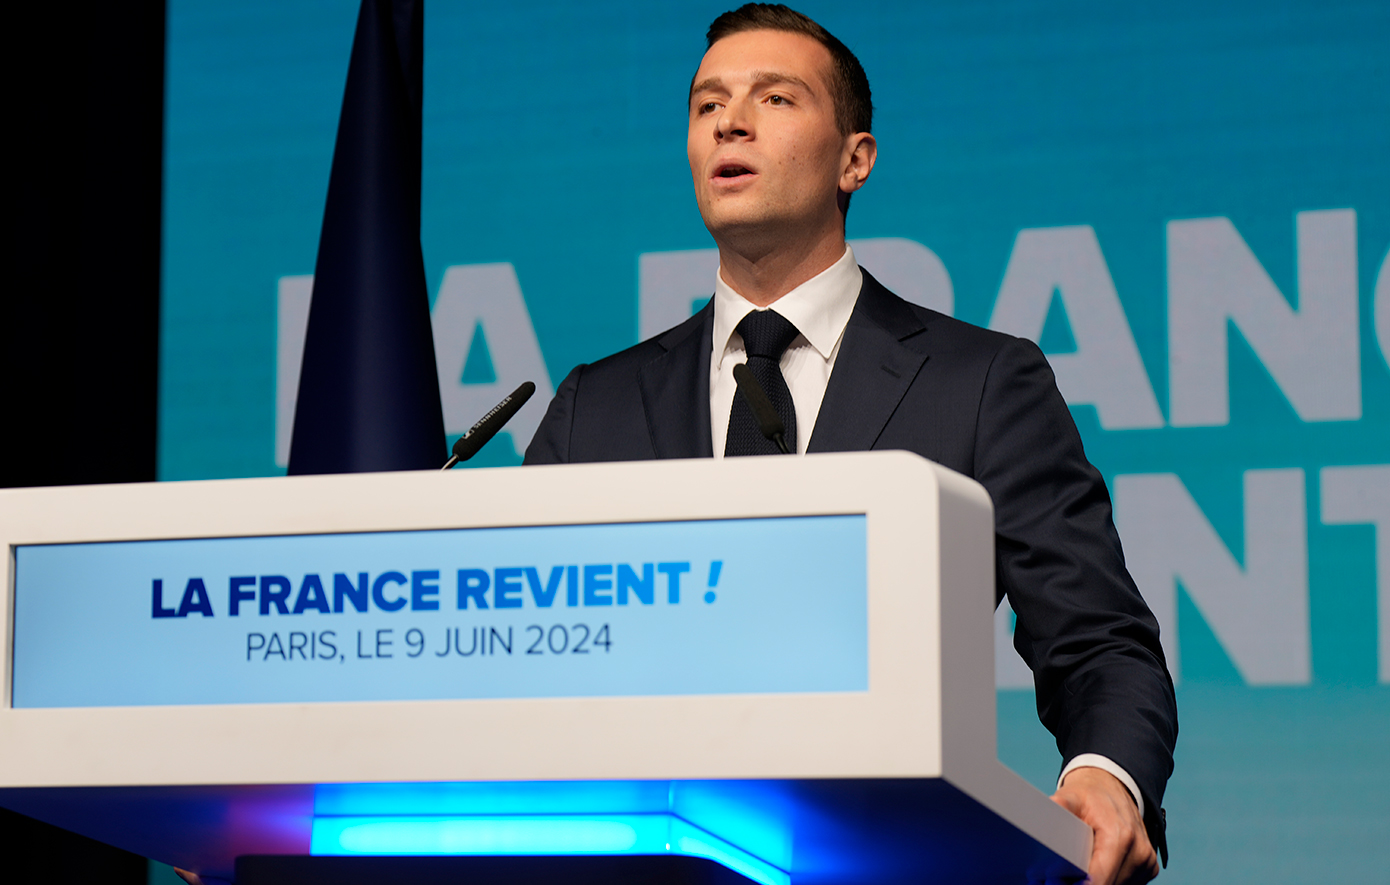 Μπαρντελά: Η Γαλλία βρίσκεται πλέον στα χέρια της ακροαριστεράς